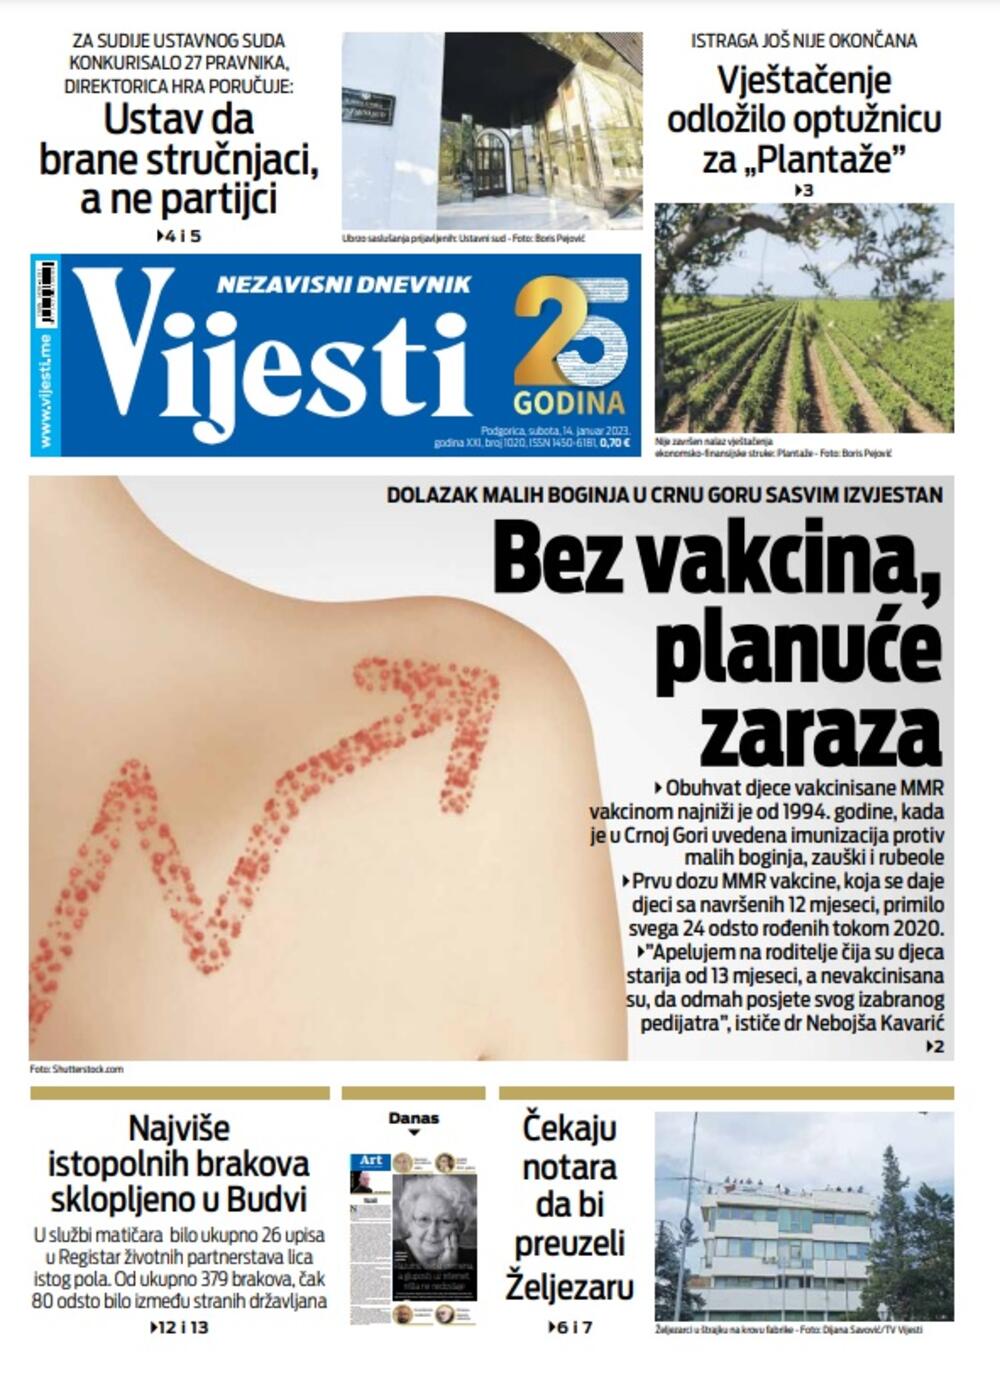 Naslovna strana "Vijesti" za 14. januar 2023. godine, Foto: Vijesti